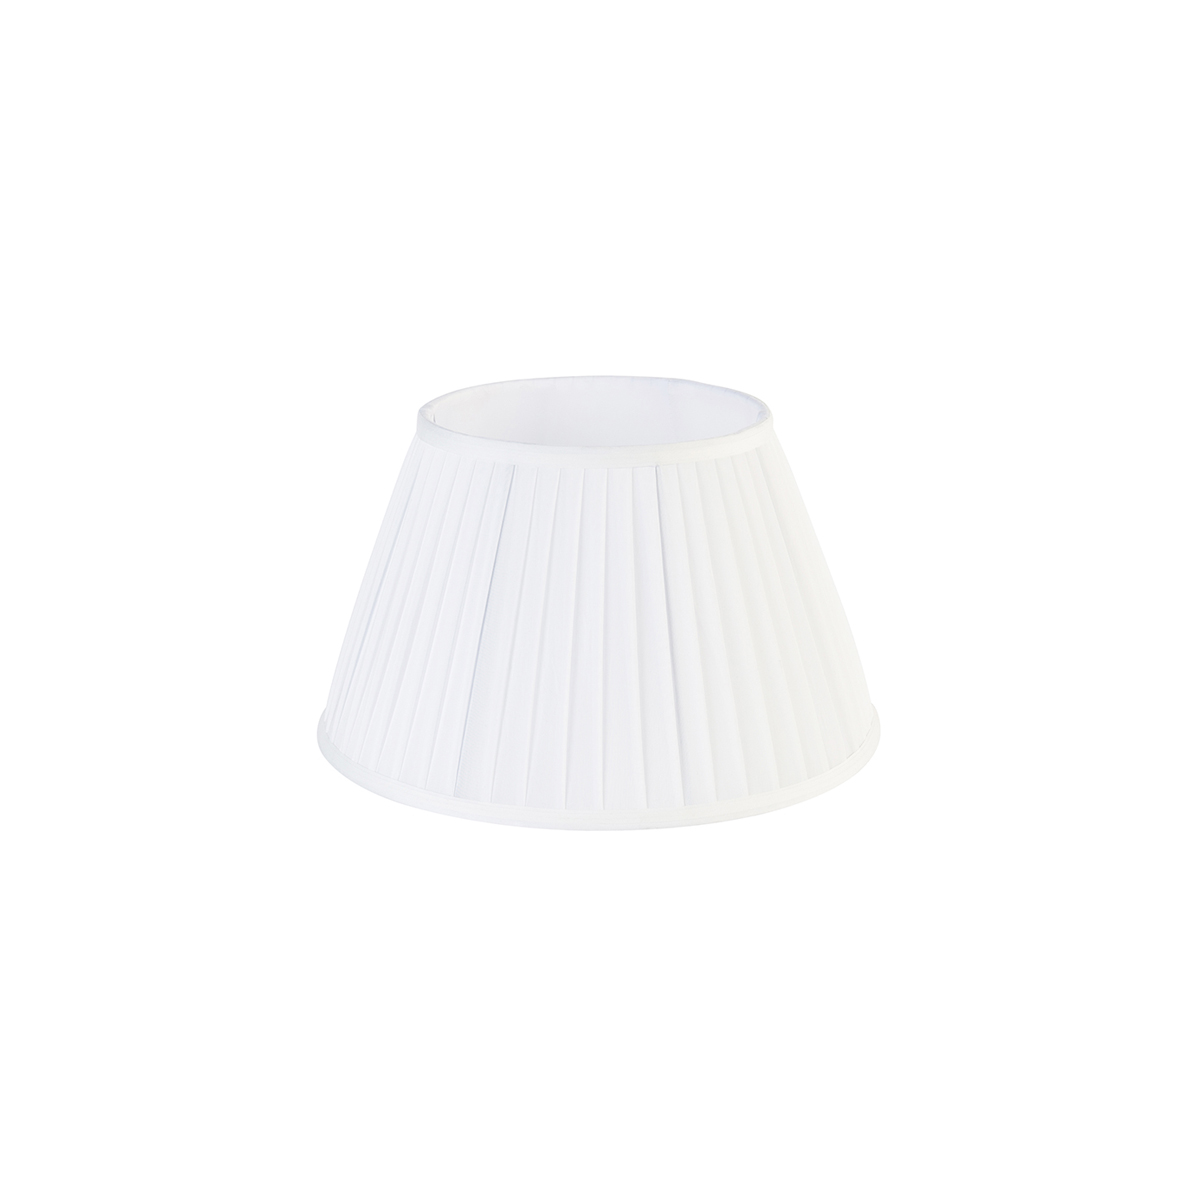 Plisse lámpaernyő fehér 35/20 cm